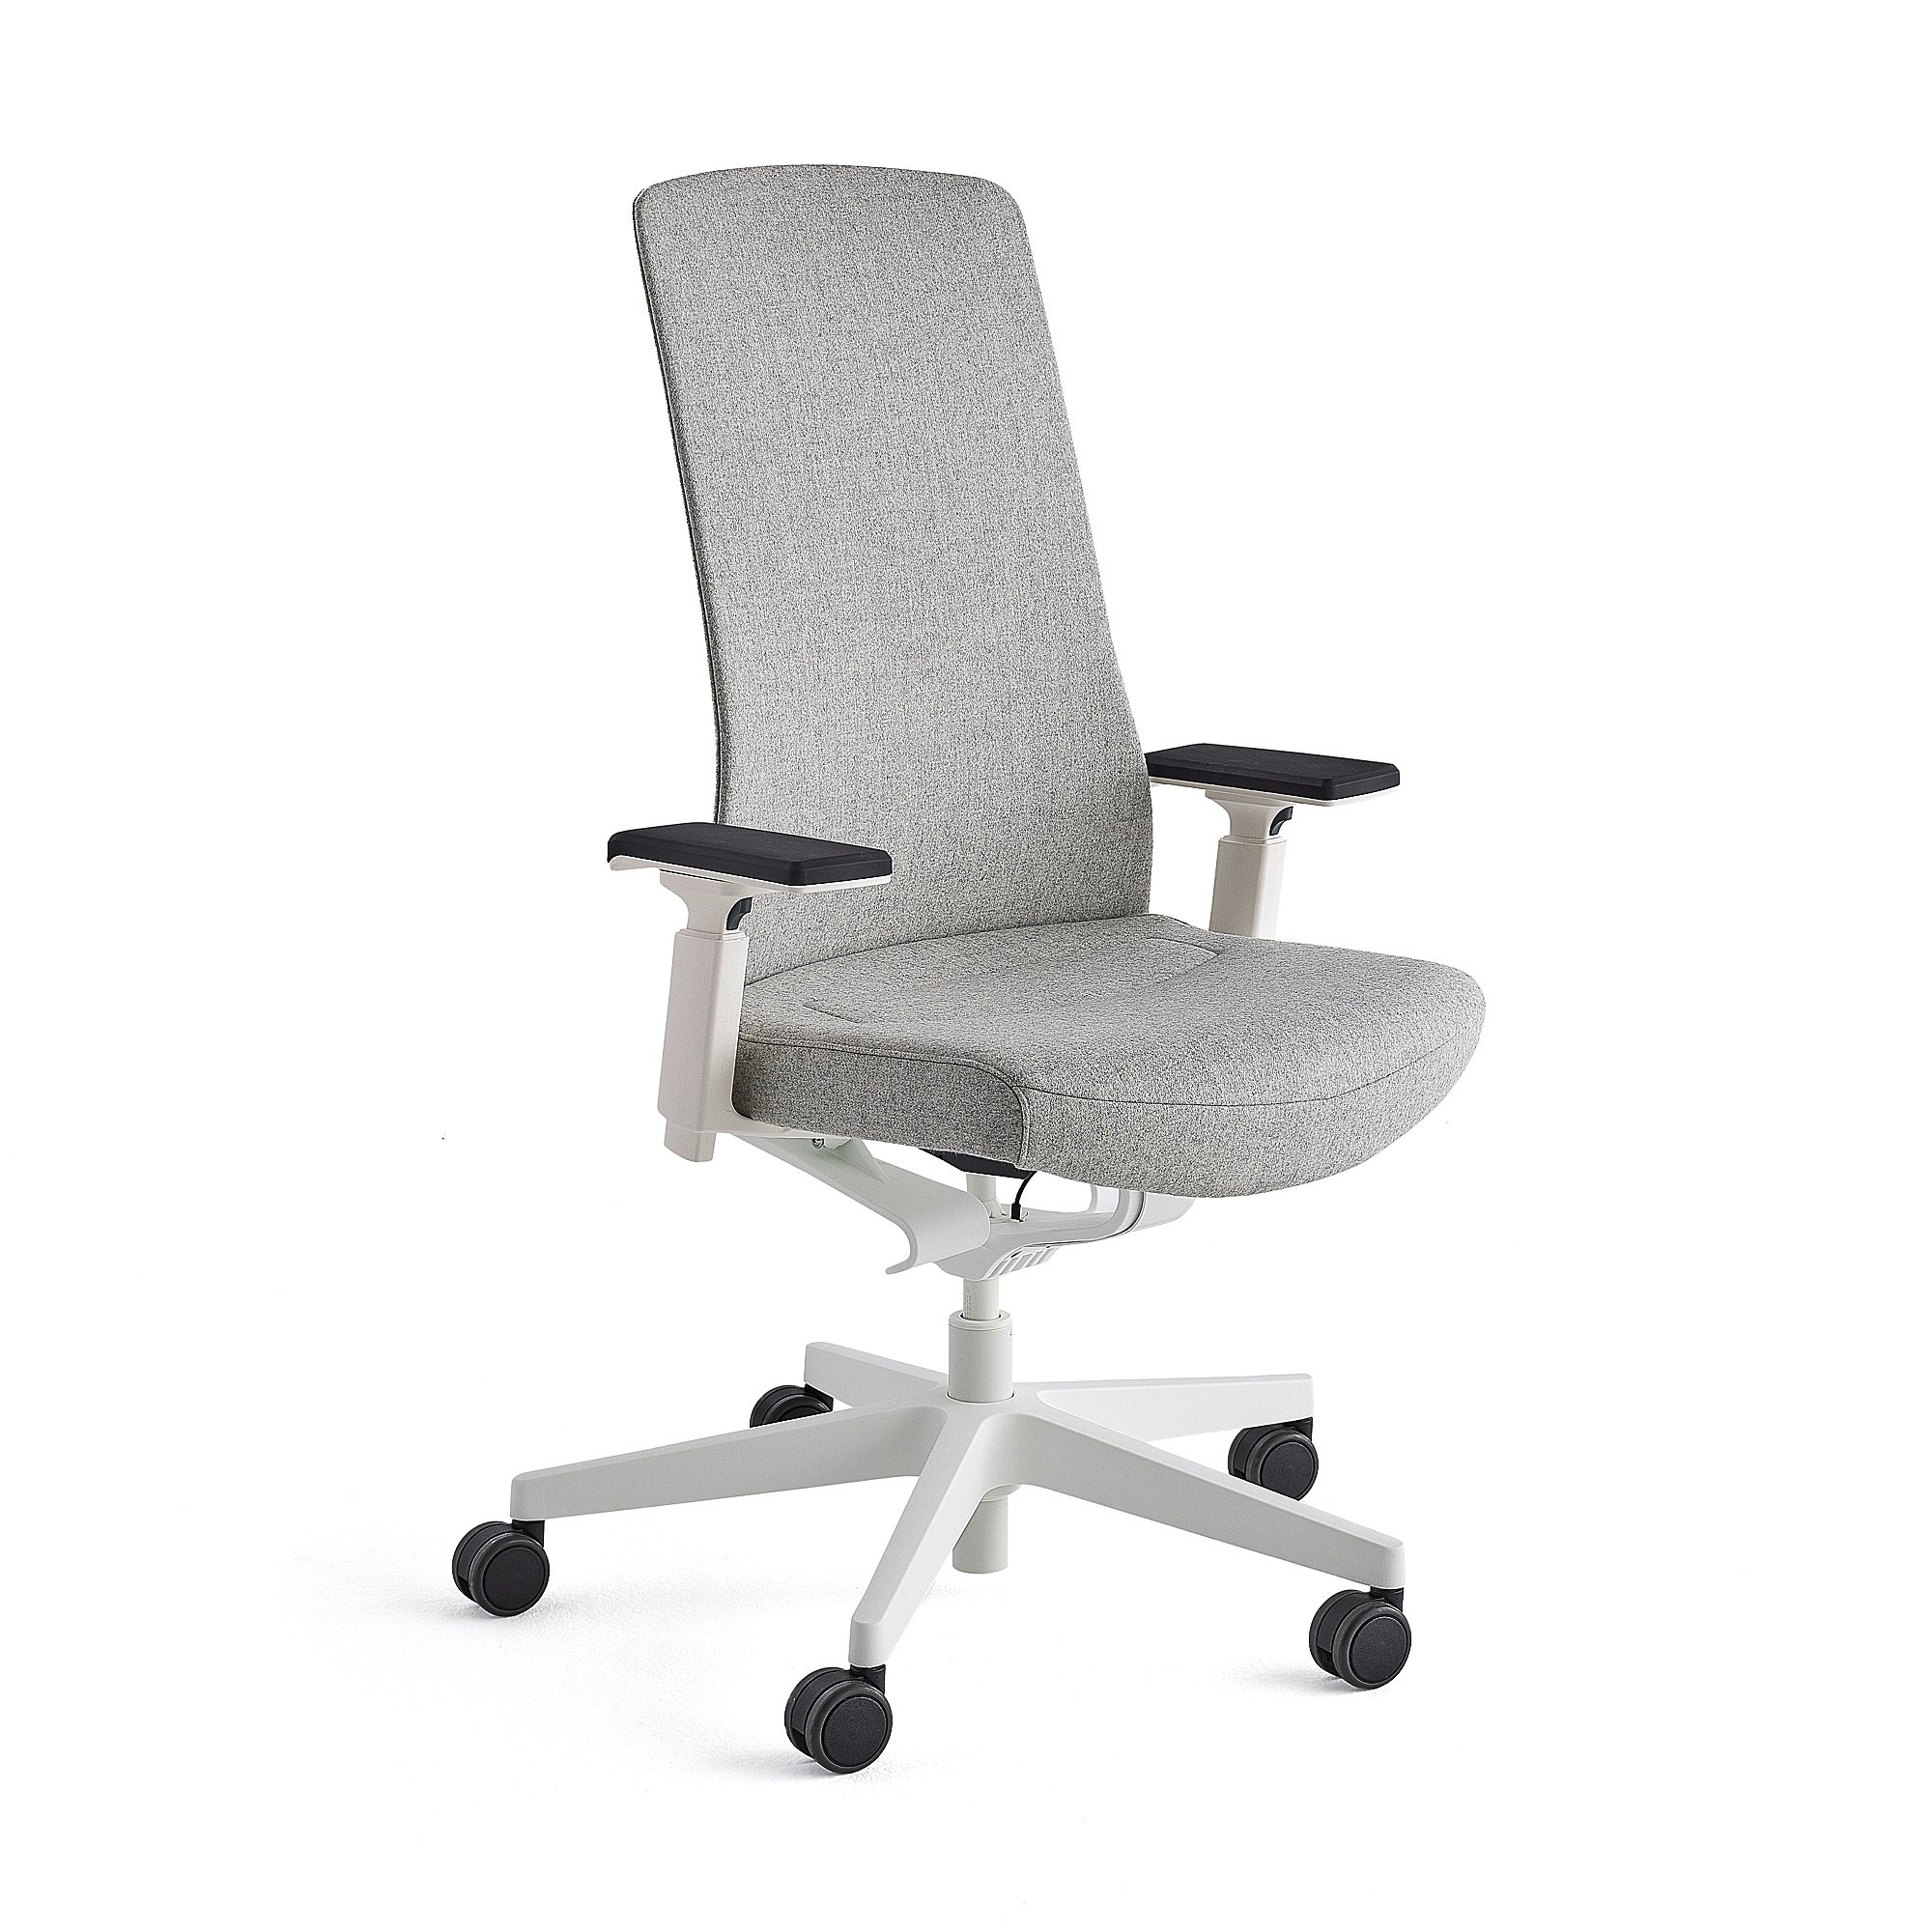 E-shop Kancelárska stolička BELMONT, biela/svetlošedá